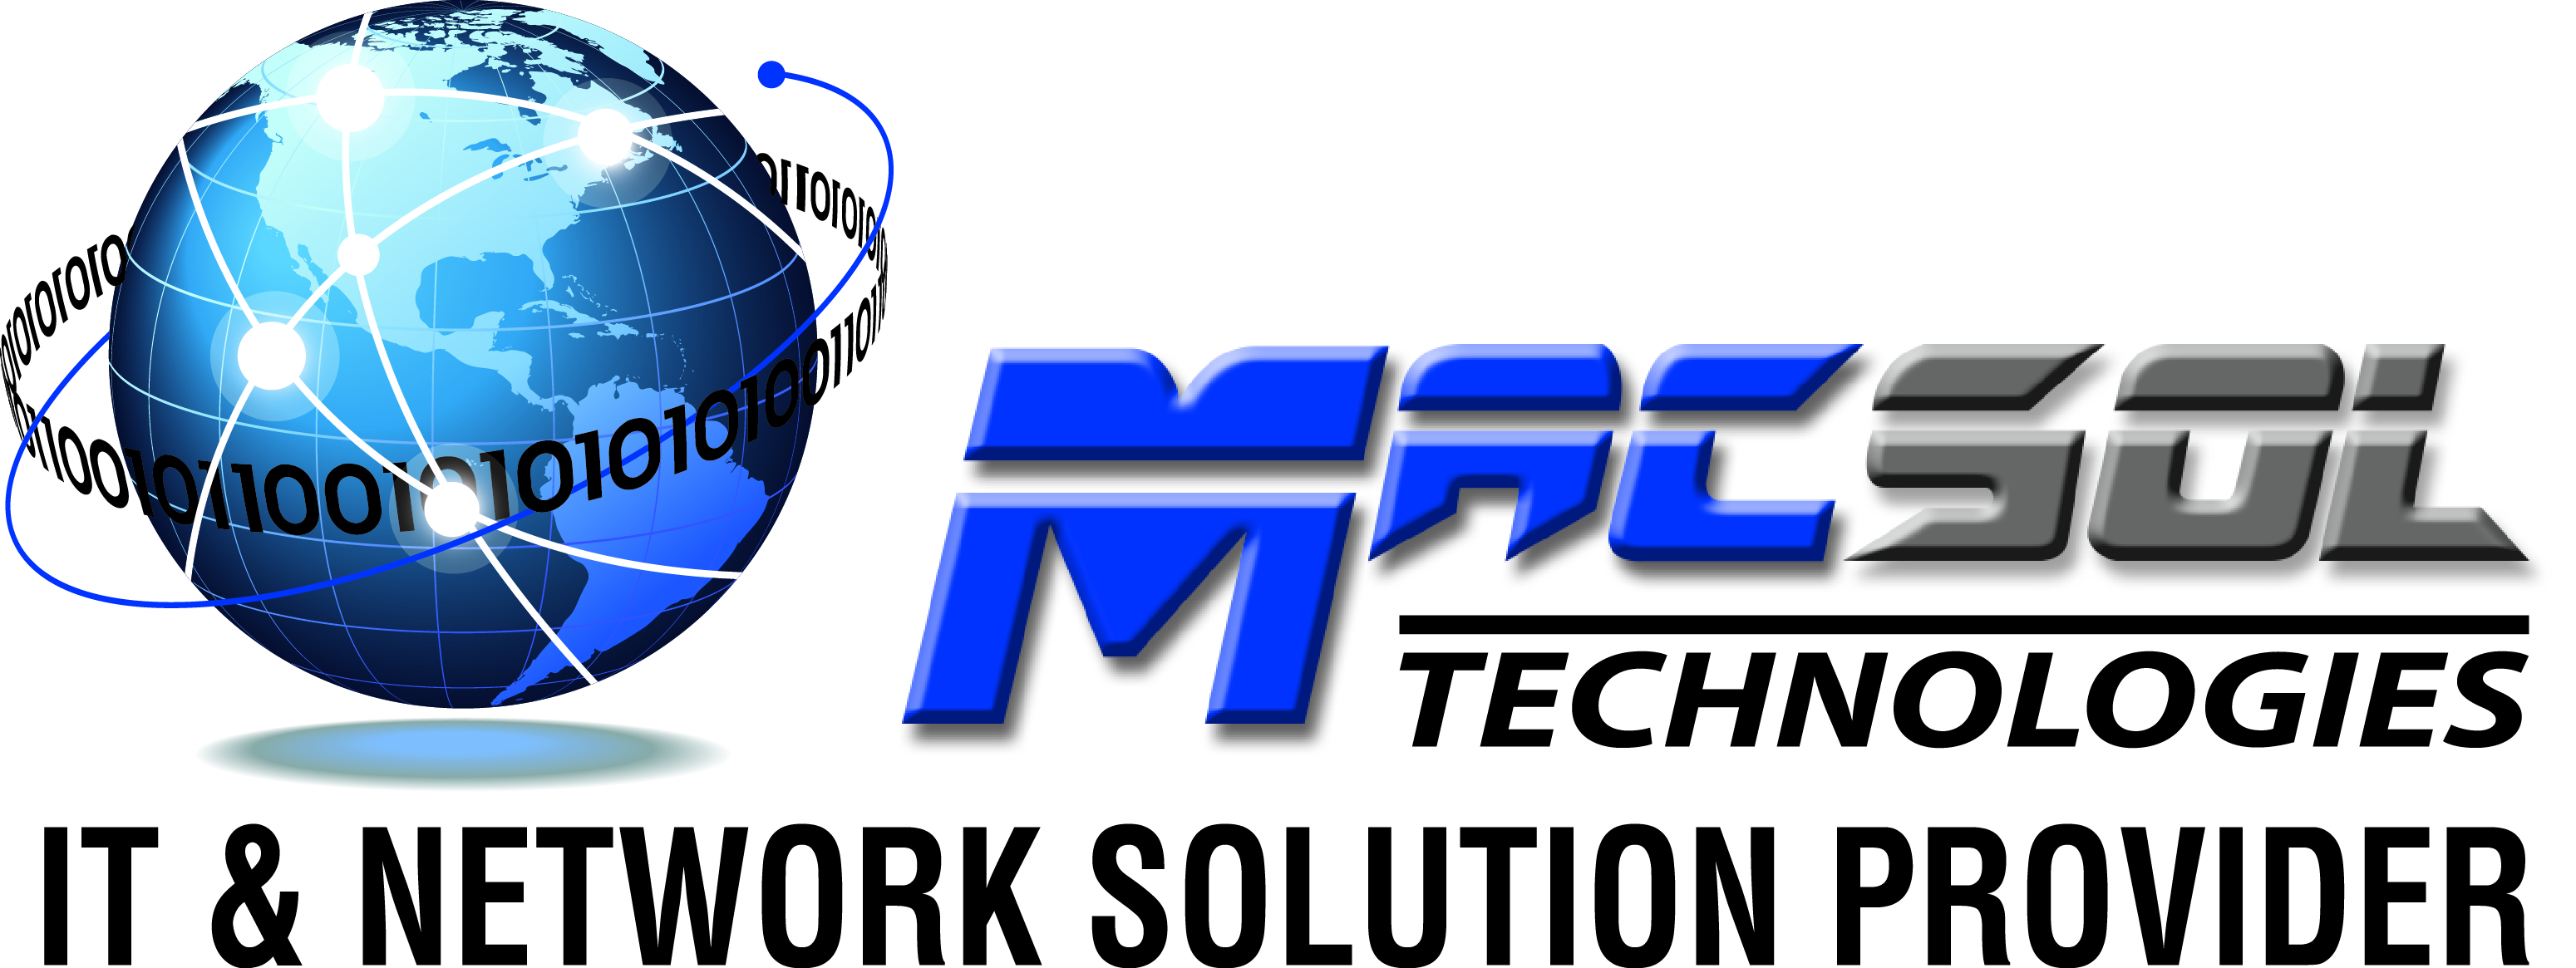 MacSol Technologies